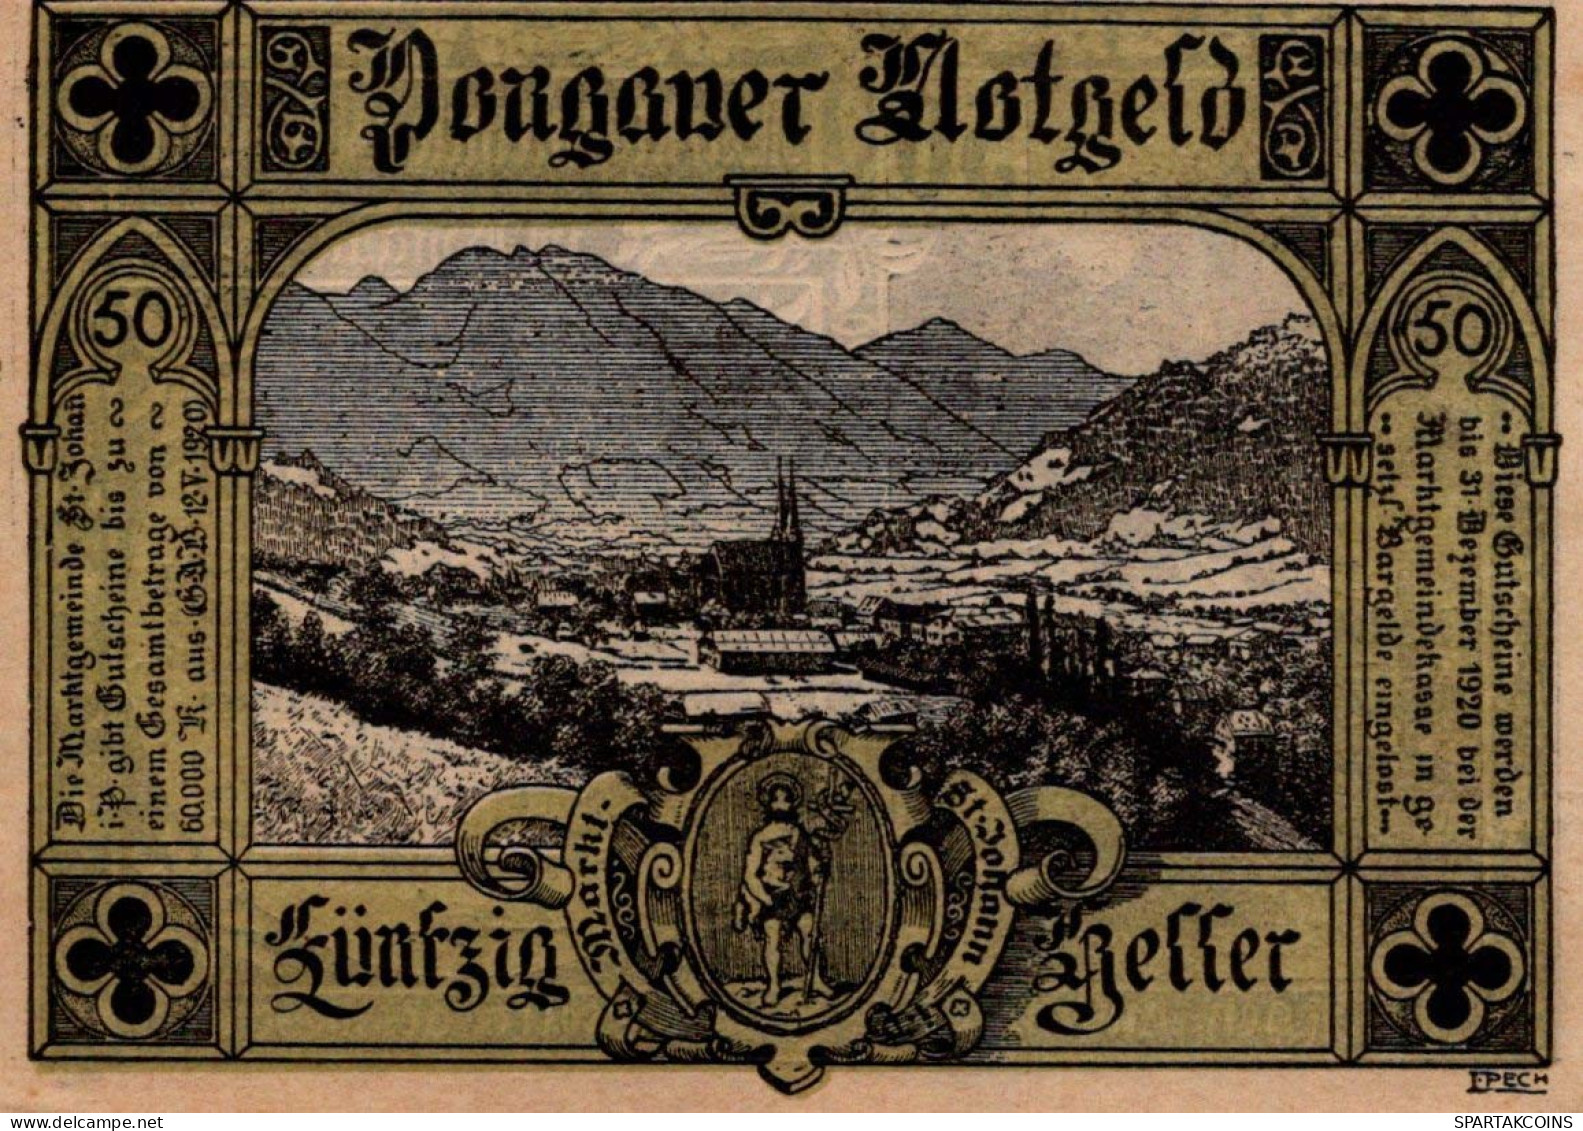 50 HELLER 1920 Stadt SANKT JOHANN IM PONGAU Salzburg Österreich Notgeld Papiergeld Banknote #PG681 - [11] Emisiones Locales